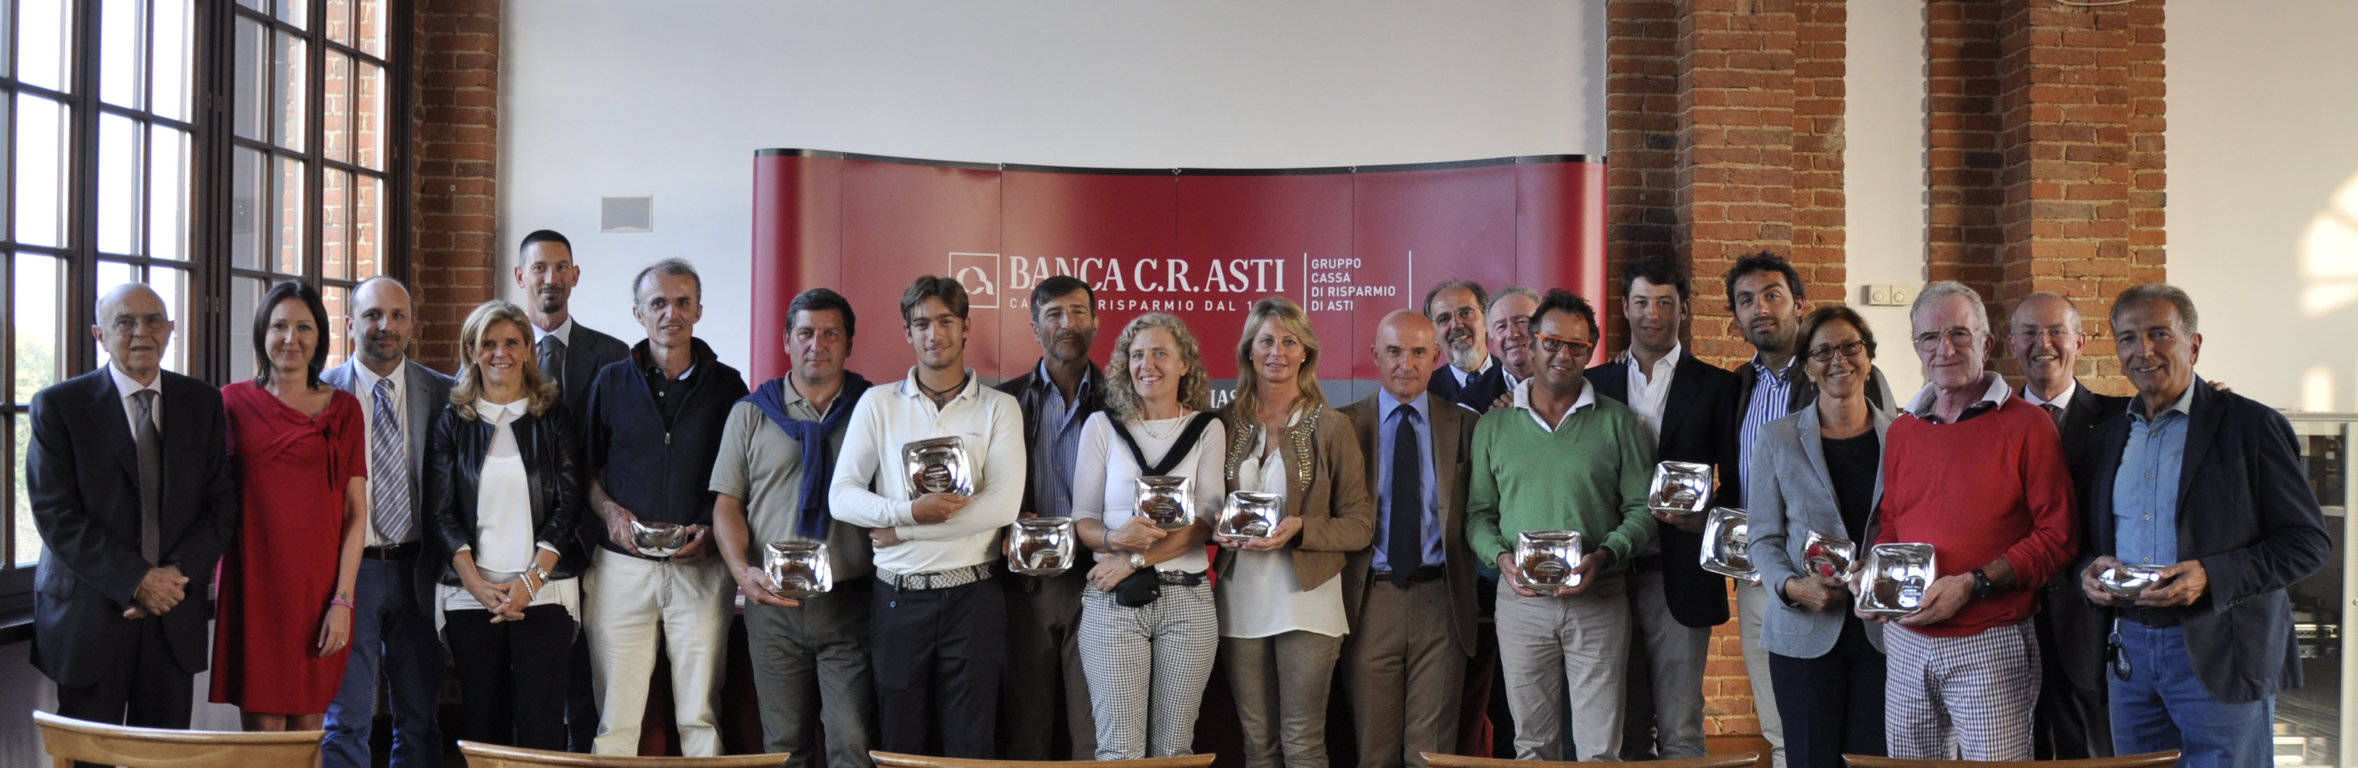 Grande partecipazione al Golf Club Margara per la 13a Patrimonium Cup di Banca C.R.Asti